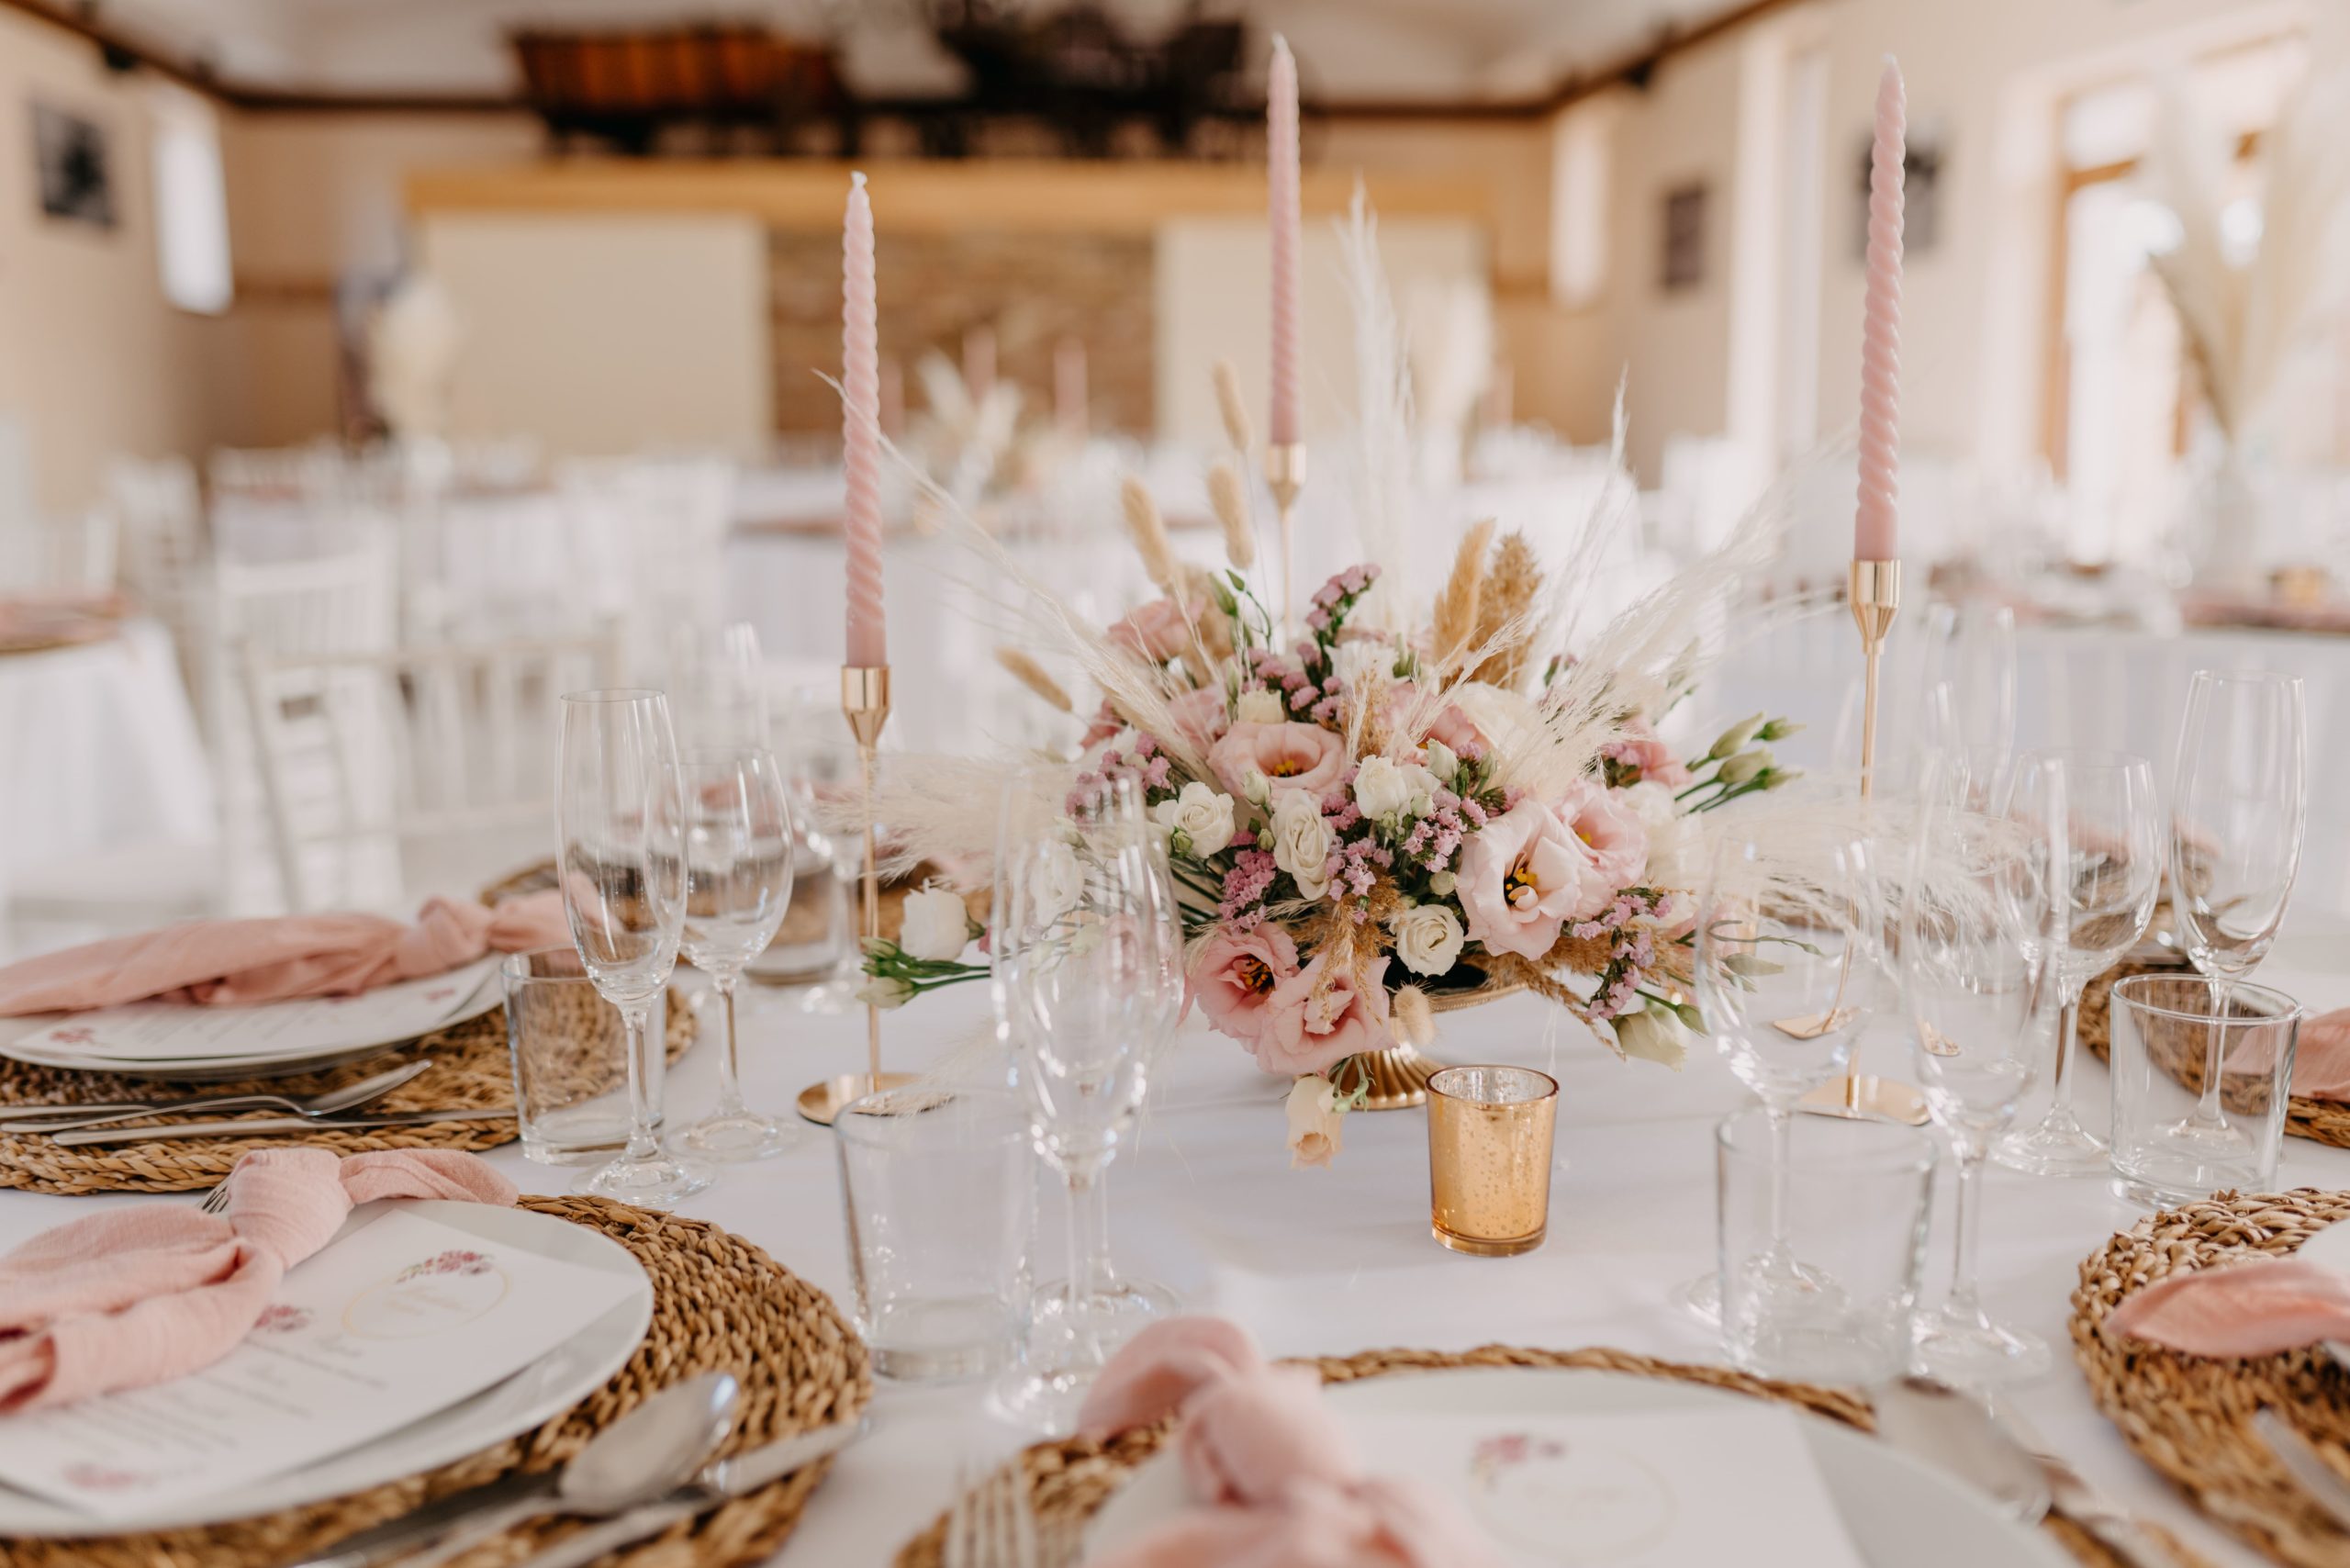 Priestor šúrovce s prichystanou svadobnou dekoráciou na stole. Kveta, dekorácie a stolovanie v jemných rúžových tónoch.